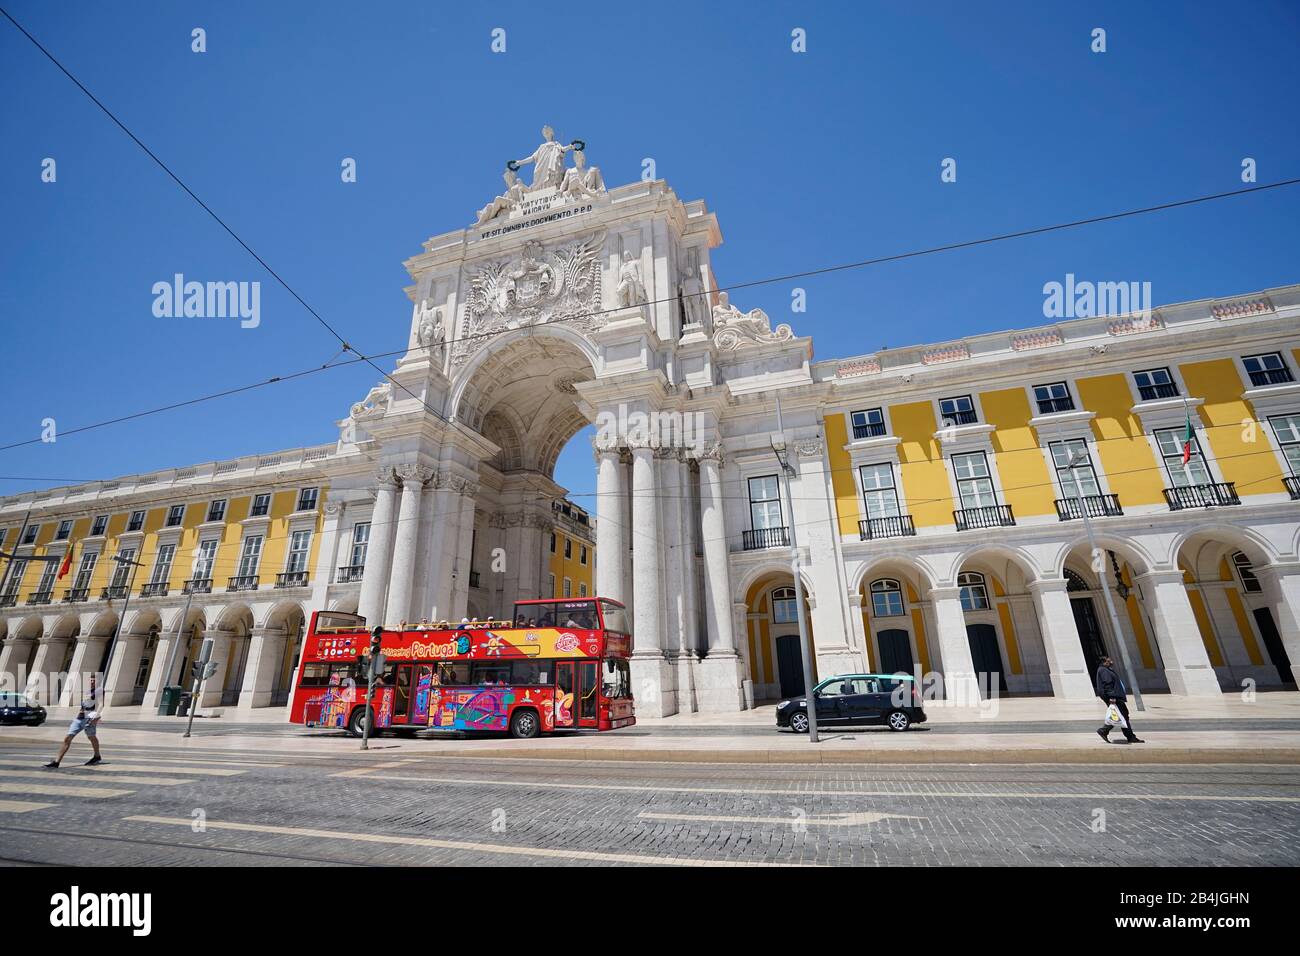 Europe, Portugal, Lisbon area, Lisbon, Baixa, Arc de Triomphe, Arco da Rua Augusta, Praca do Comercio, commercial center, sightseeing bus Stock Photo